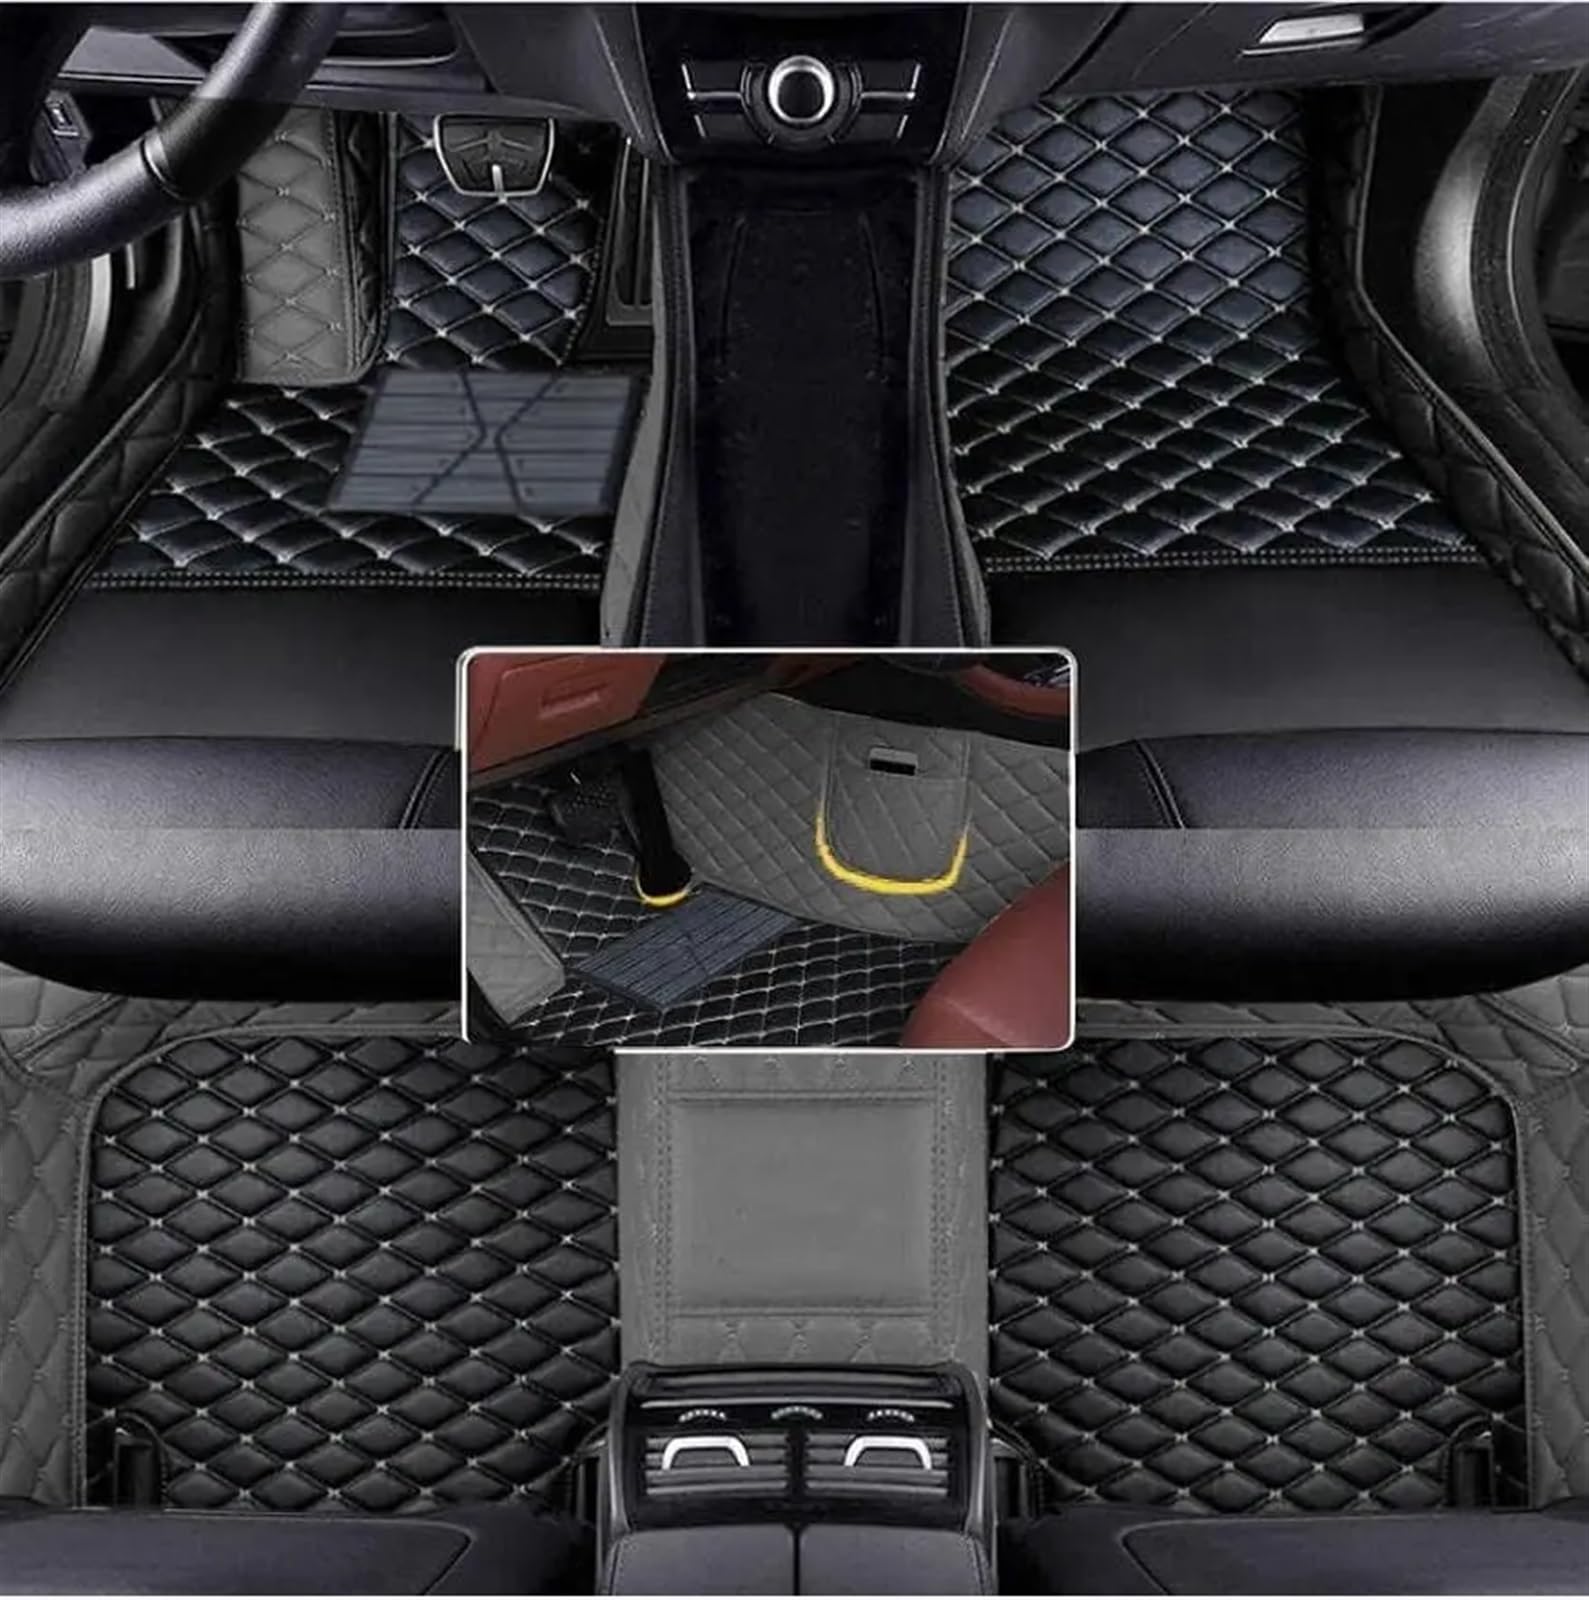 Auto Fußmatten Set Kompatibel Mit Civic 2016 2017 2018 2019 2020 Maßgeschneiderte PU-Auto-Bodenmatte Für Schutz des Fahrzeugteppichs Im Innenraum.(Black with Gray) von ZHjLut